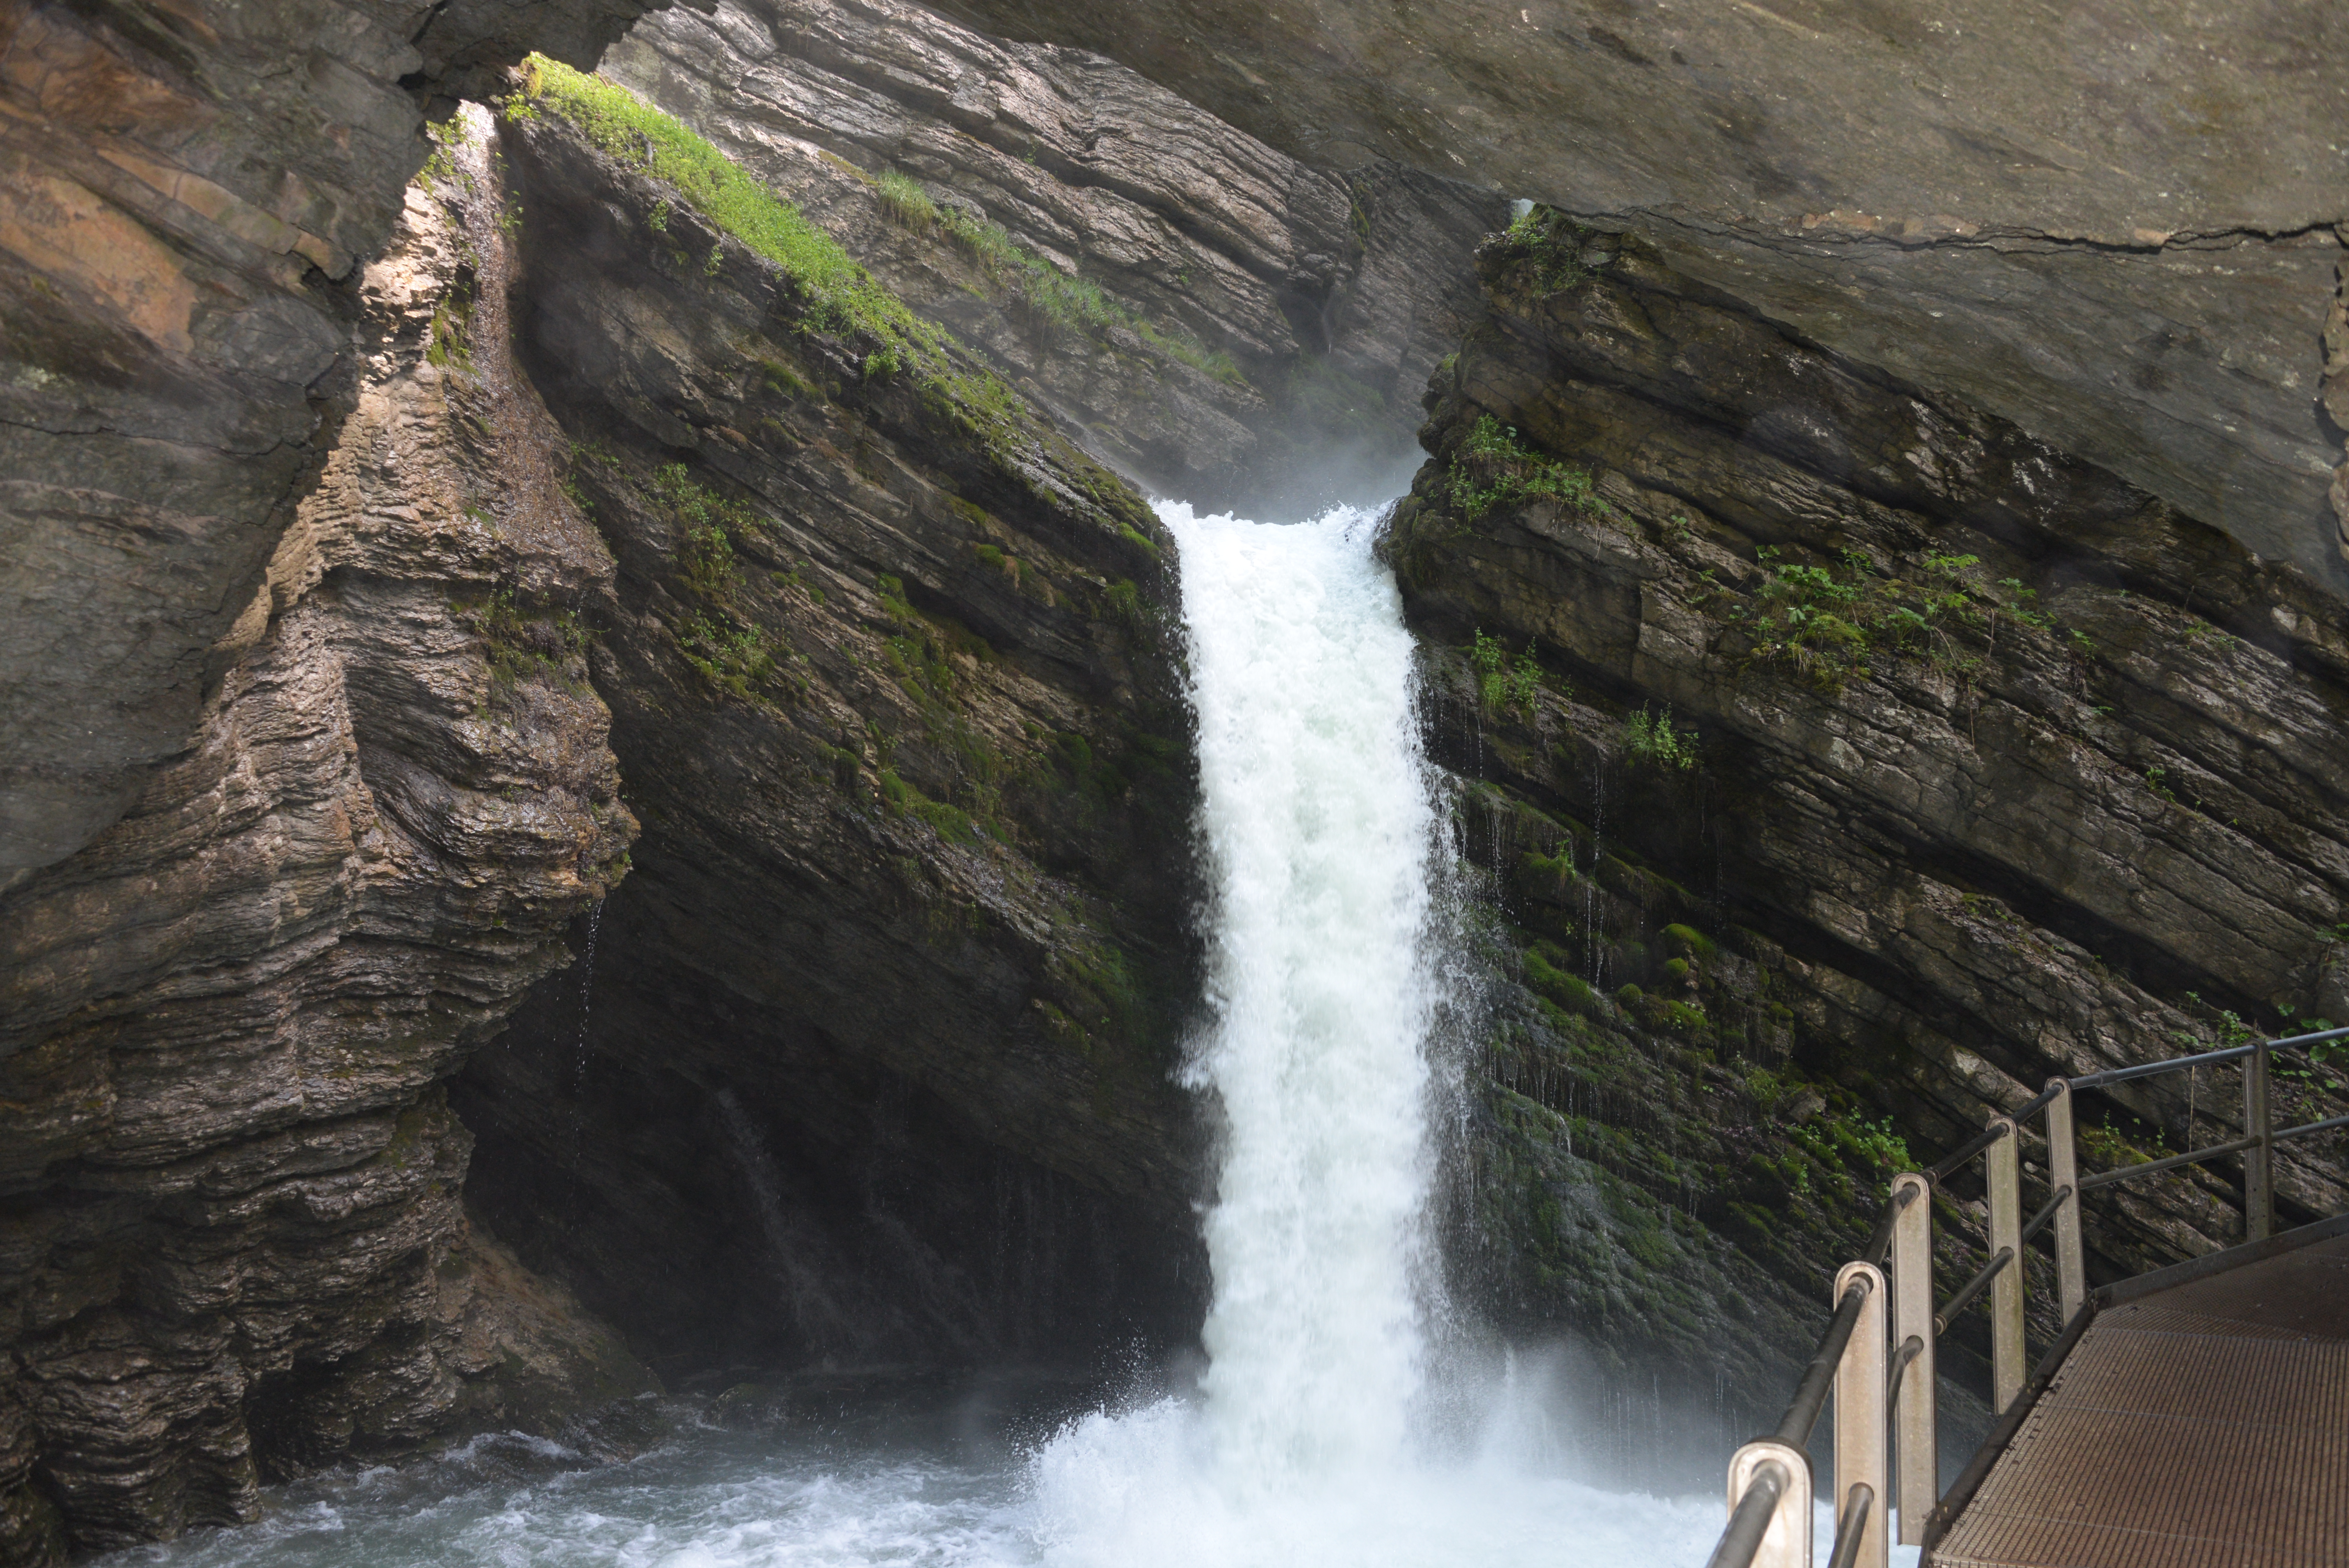 Wandbild Querformat - 20x30cm. - 40x60cm. - (31)A - Wasserfall Thur